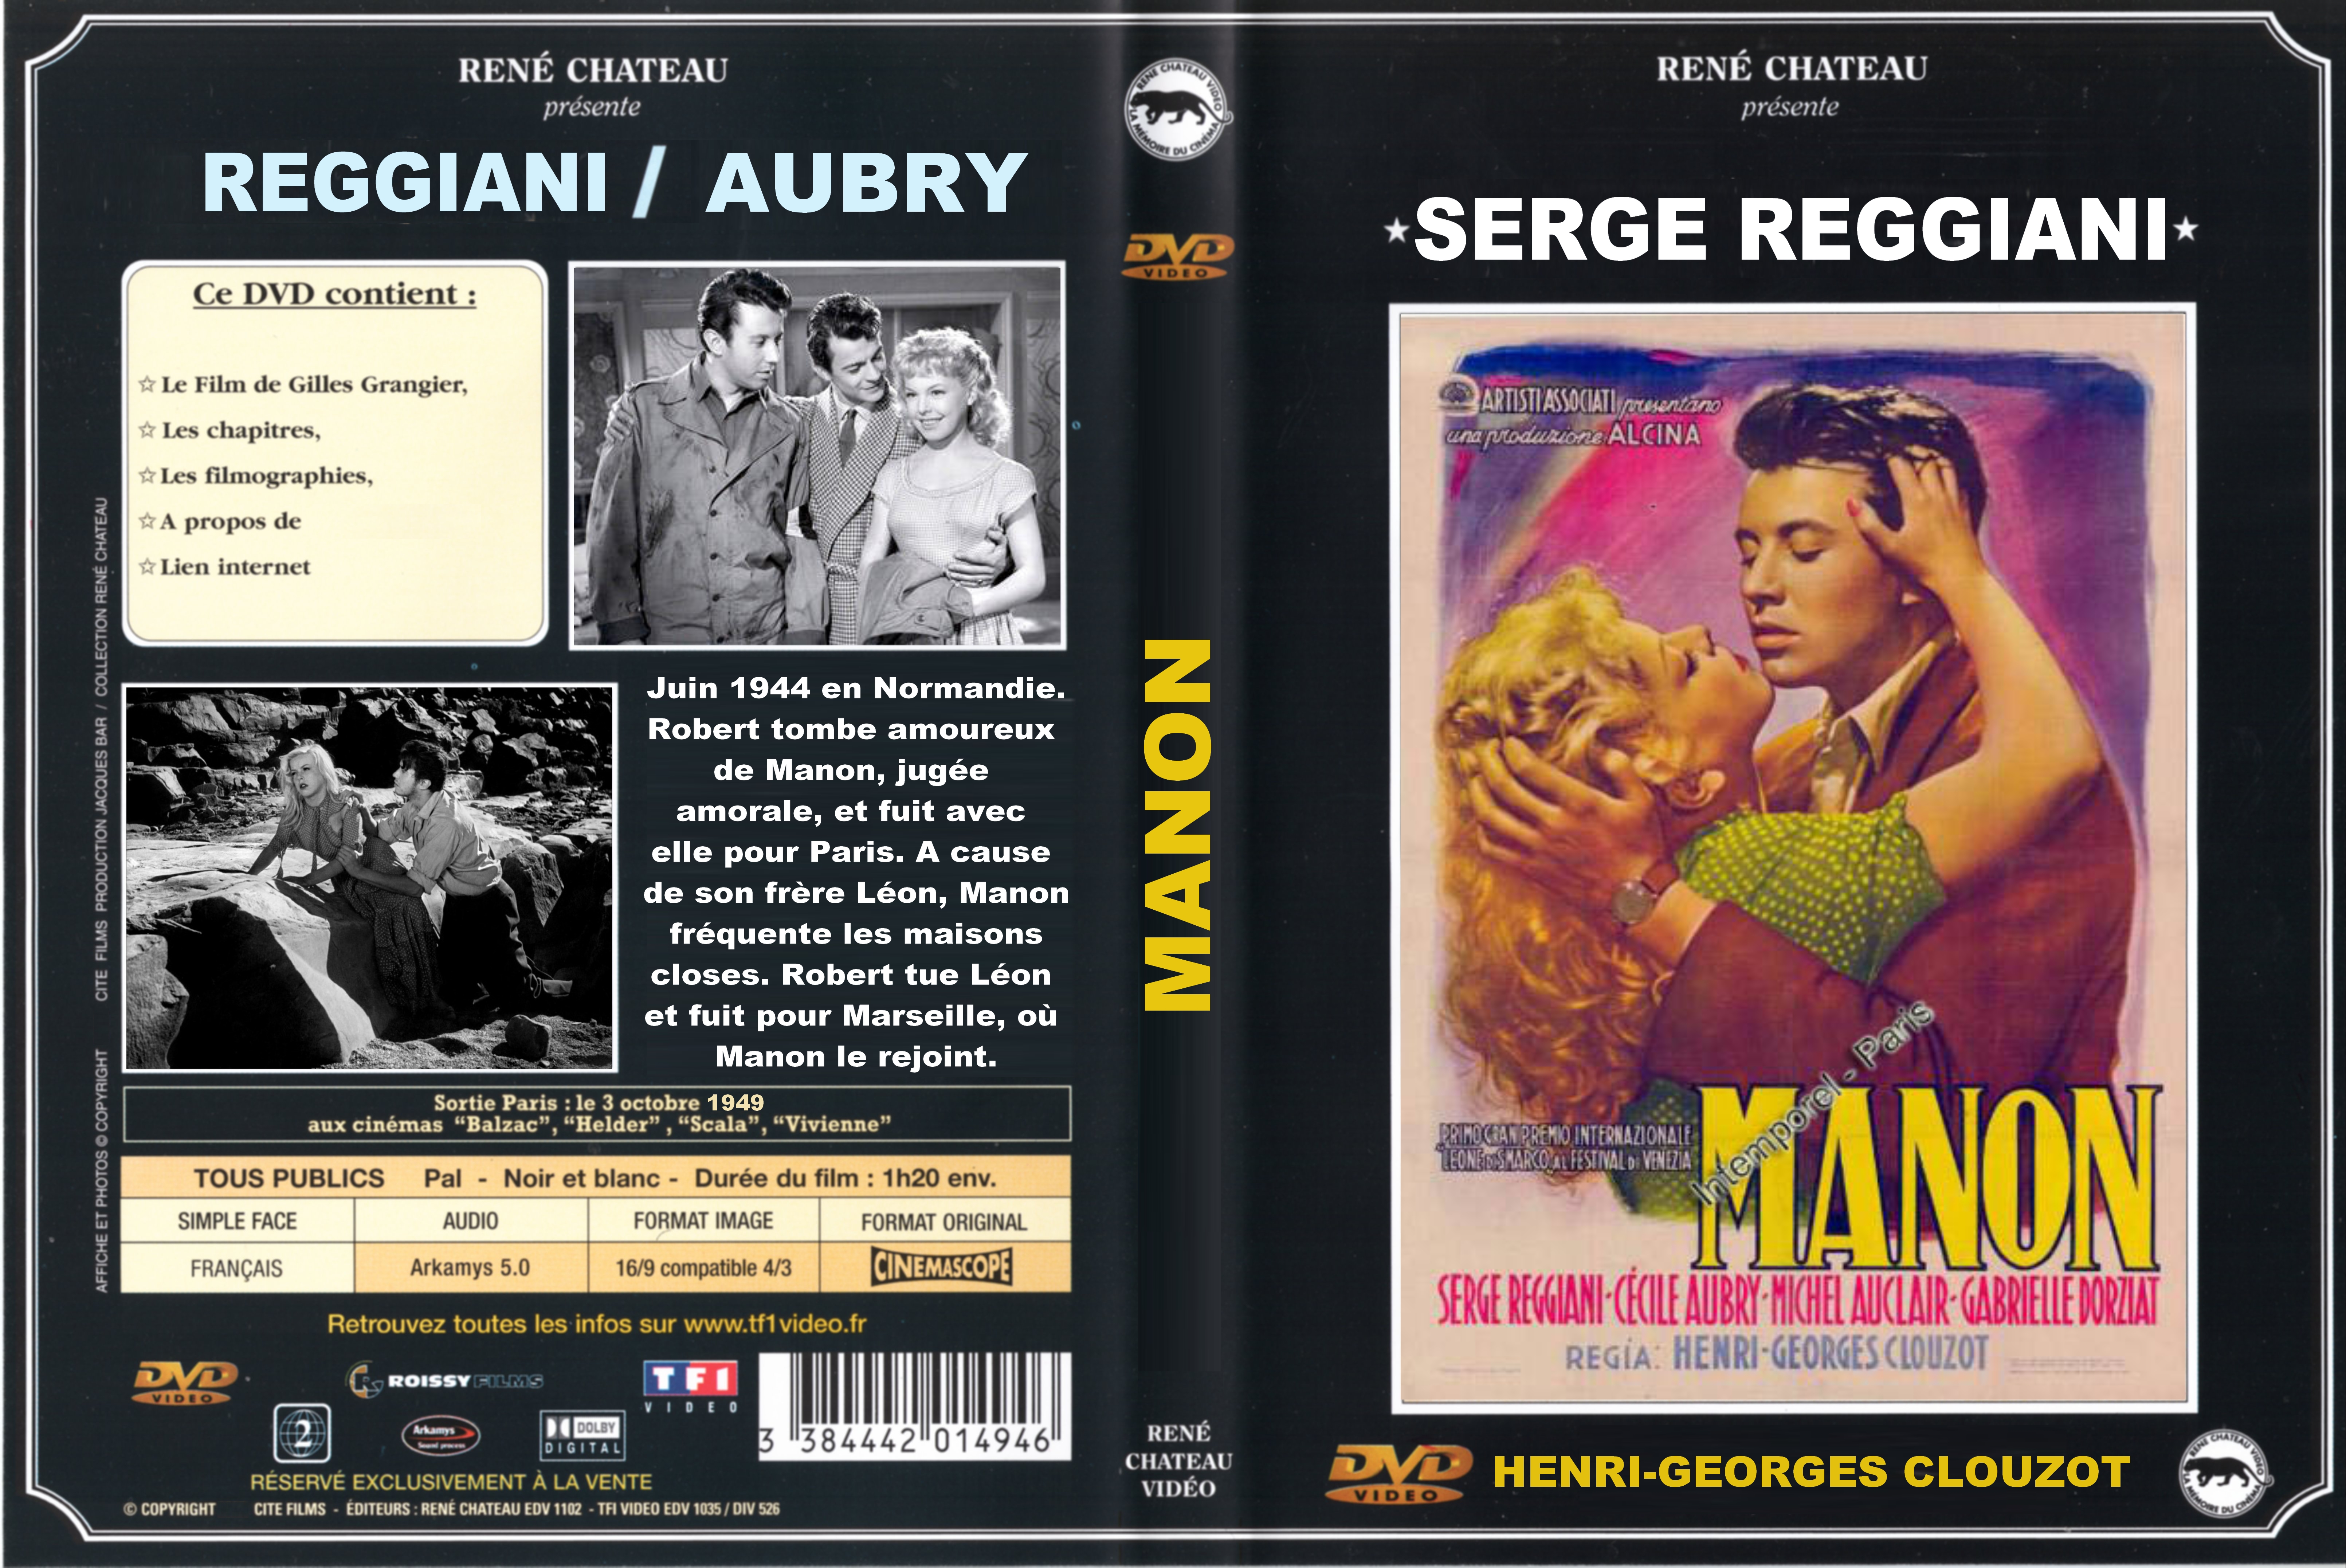 Jaquette DVD Manon (1949) custom